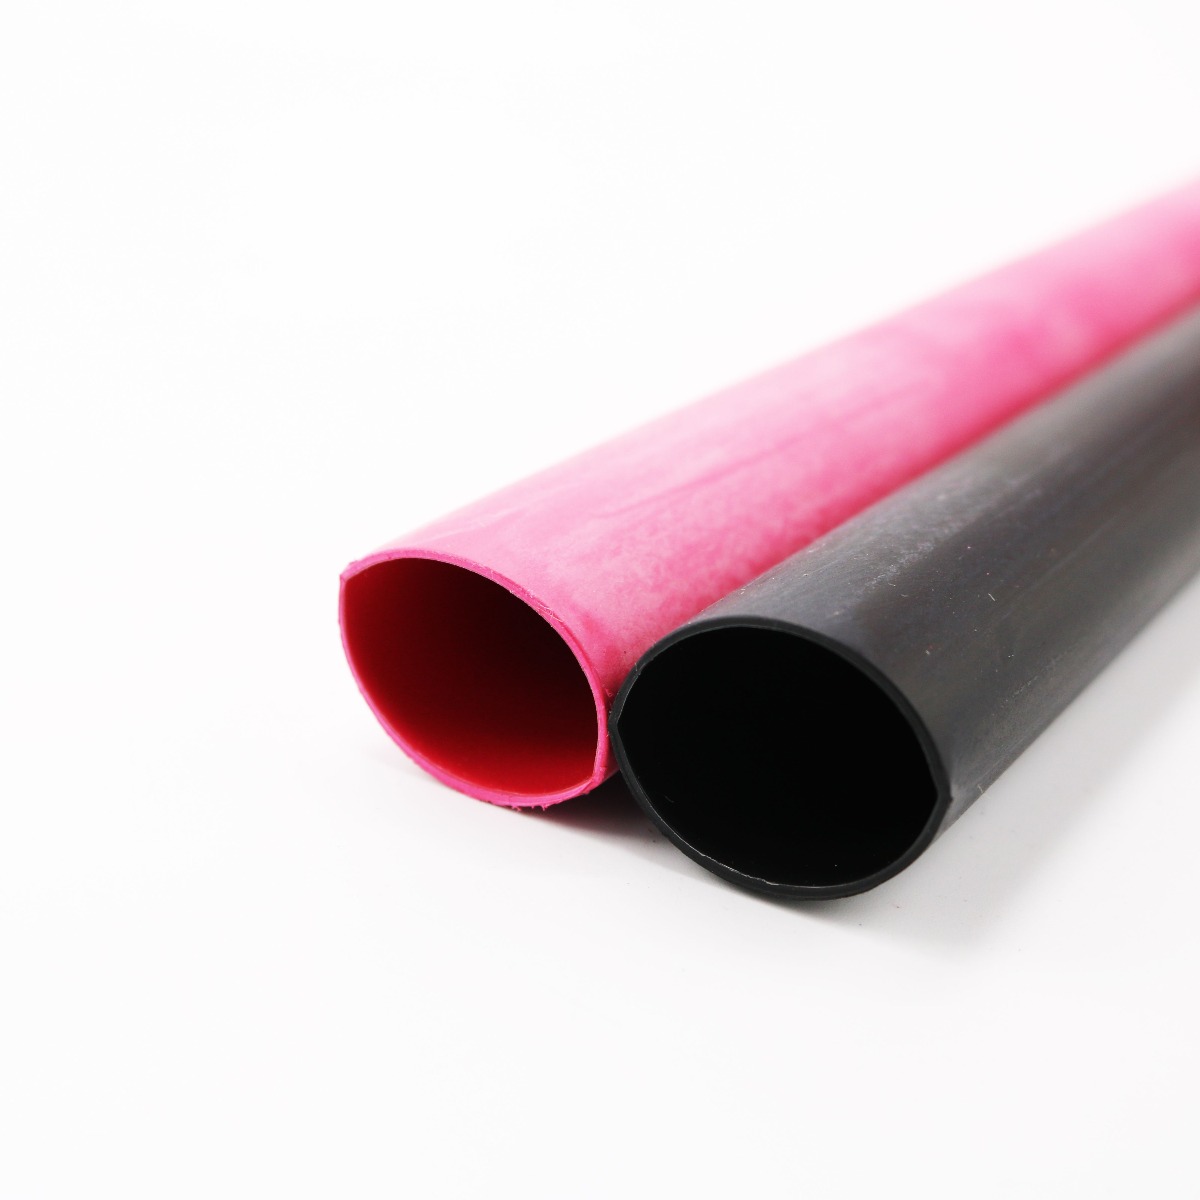 Details about   Black Adhesive Waterproof Heat shrink  3:1Heatshrink Glue Lined Tube Sleeving 